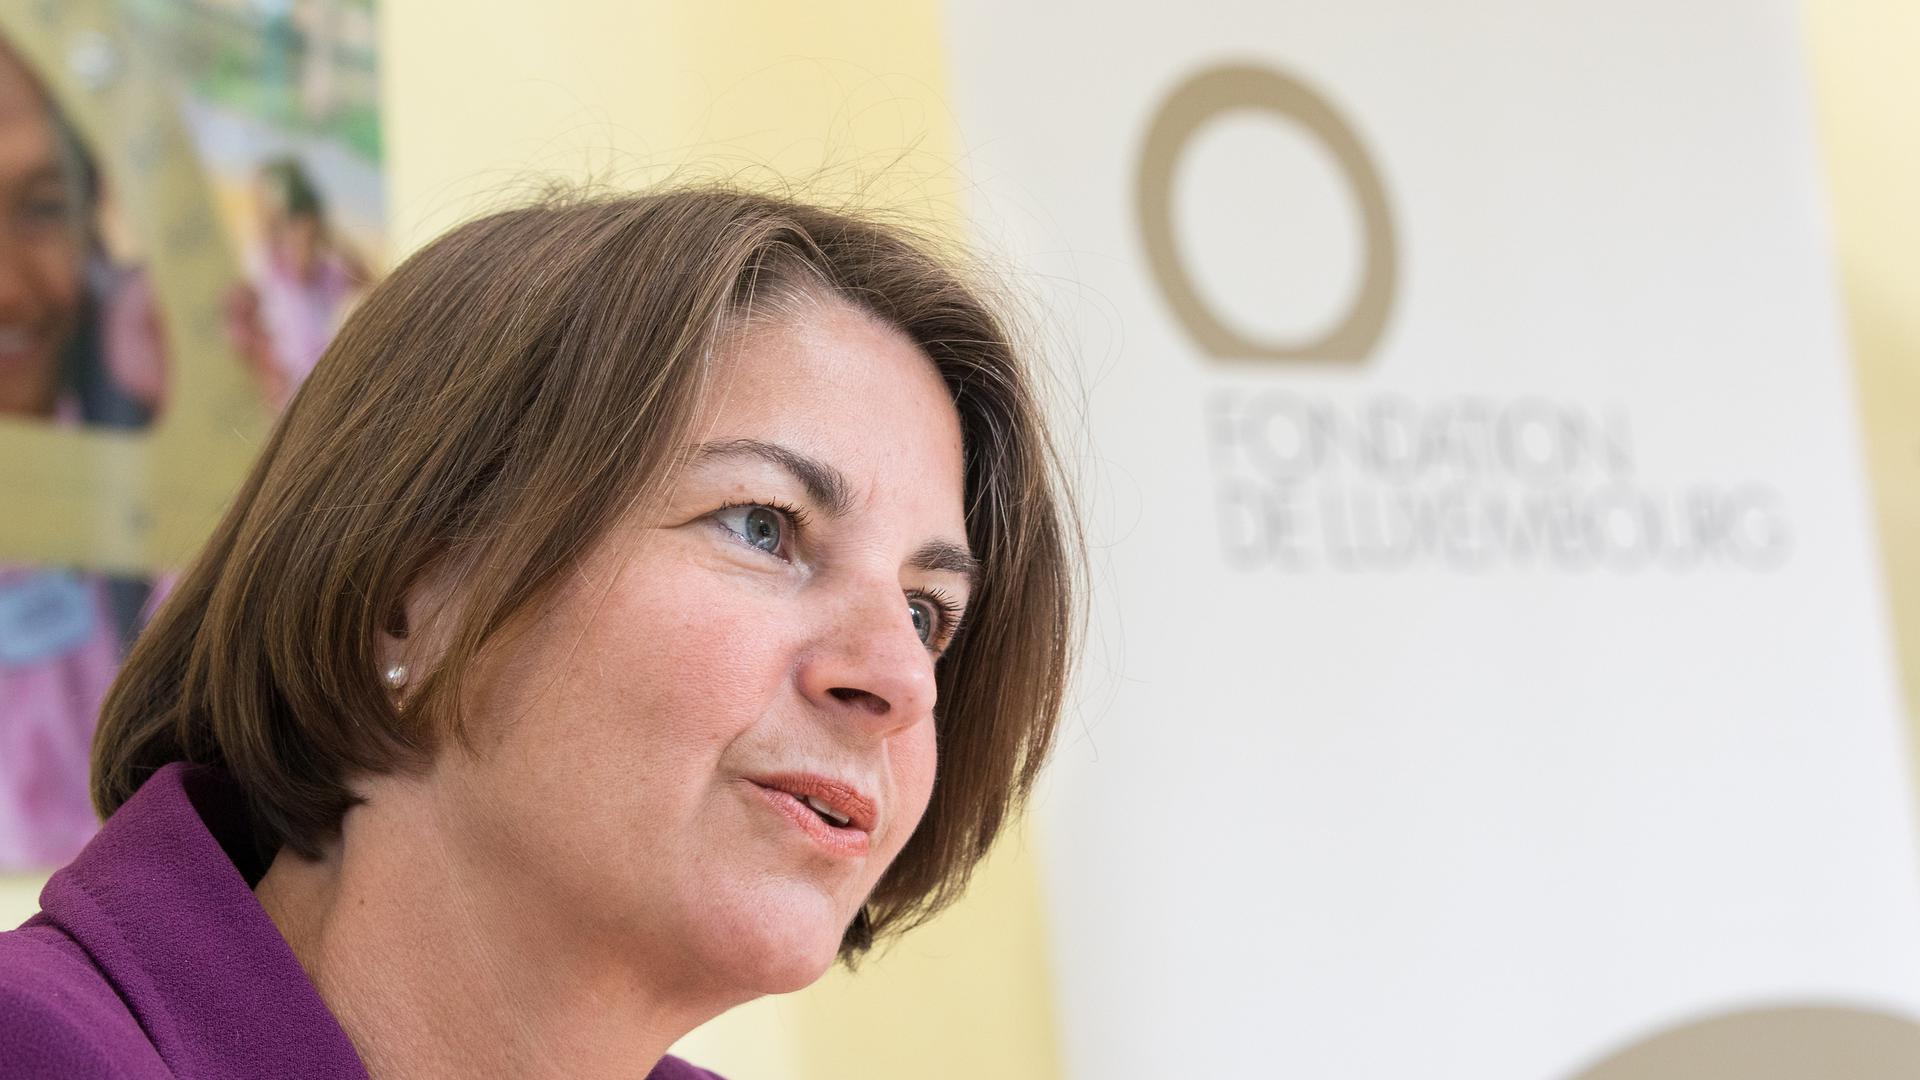 Pour la directrice de la Fondation de Luxembourg, Tonika Hirdman, "2020 reste une formidable année de mobilisation".